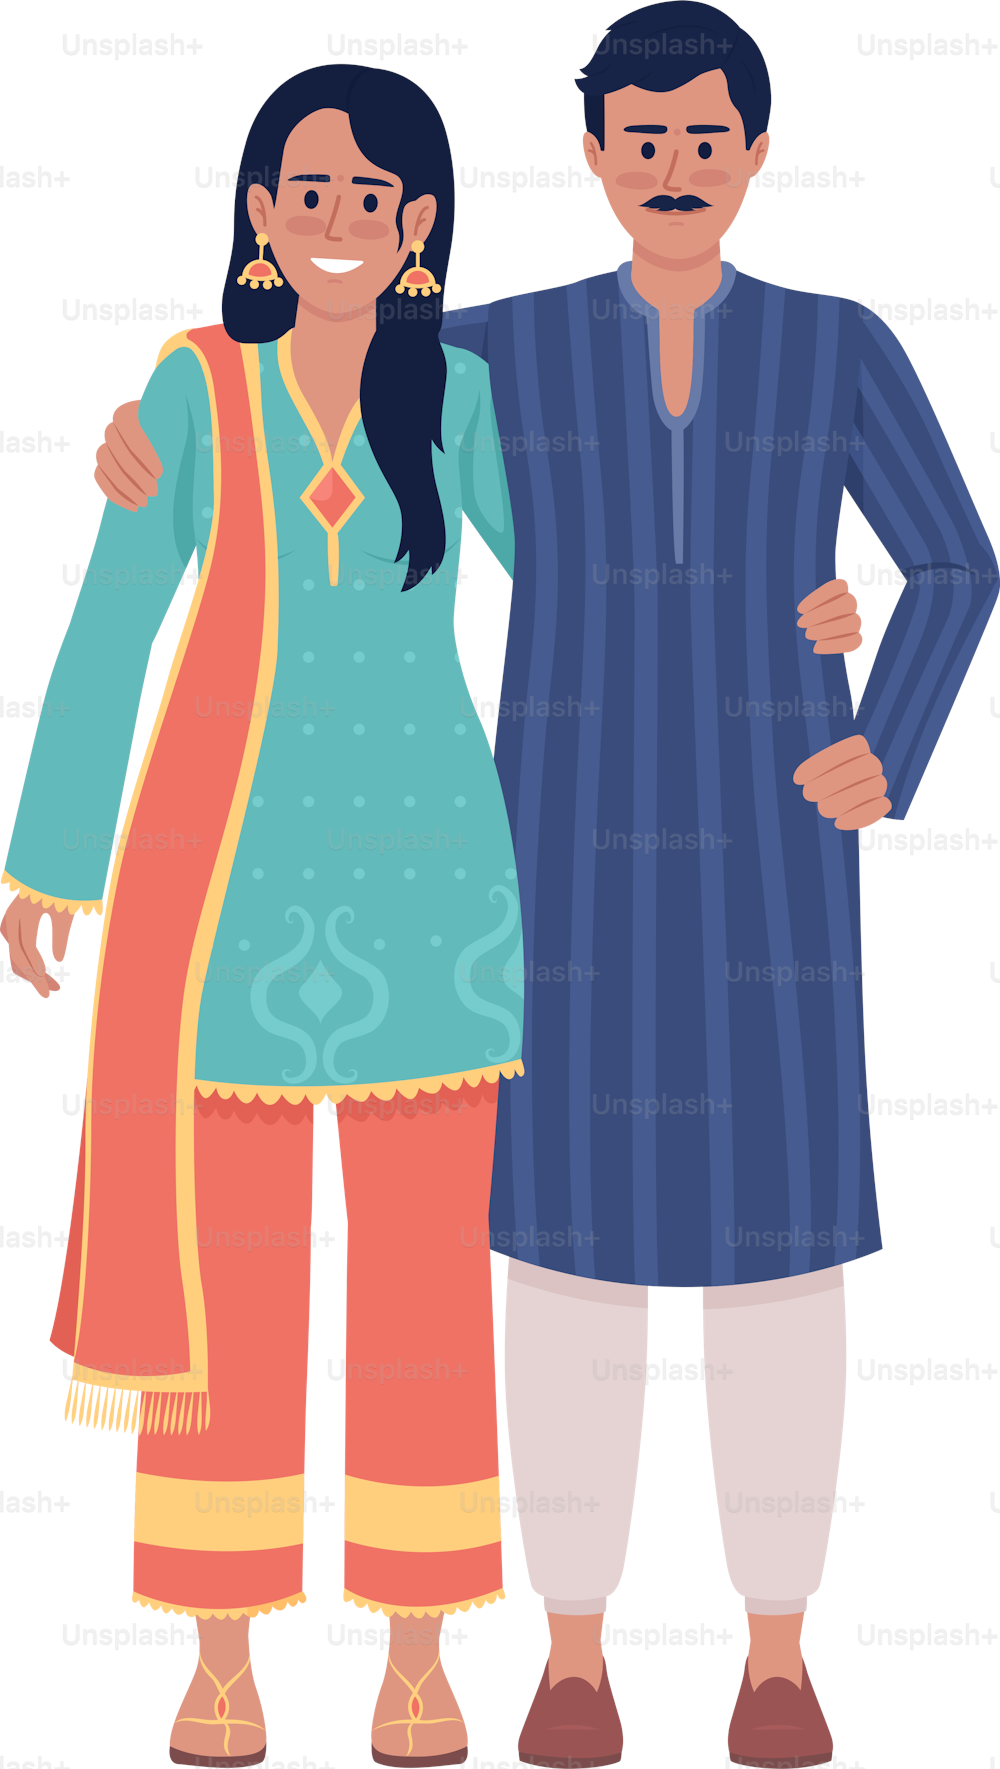 인도 민족 의상을 입은 행복한 커플은 세미 플랫 컬러 벡터 캐릭터를 입고 있다. 편집 가능한 그림. 흰색에 전신 사람들. 웹 그래픽 디자인 및 애니메이션을 위한 간단한 만화 스타일 일러스트레이션